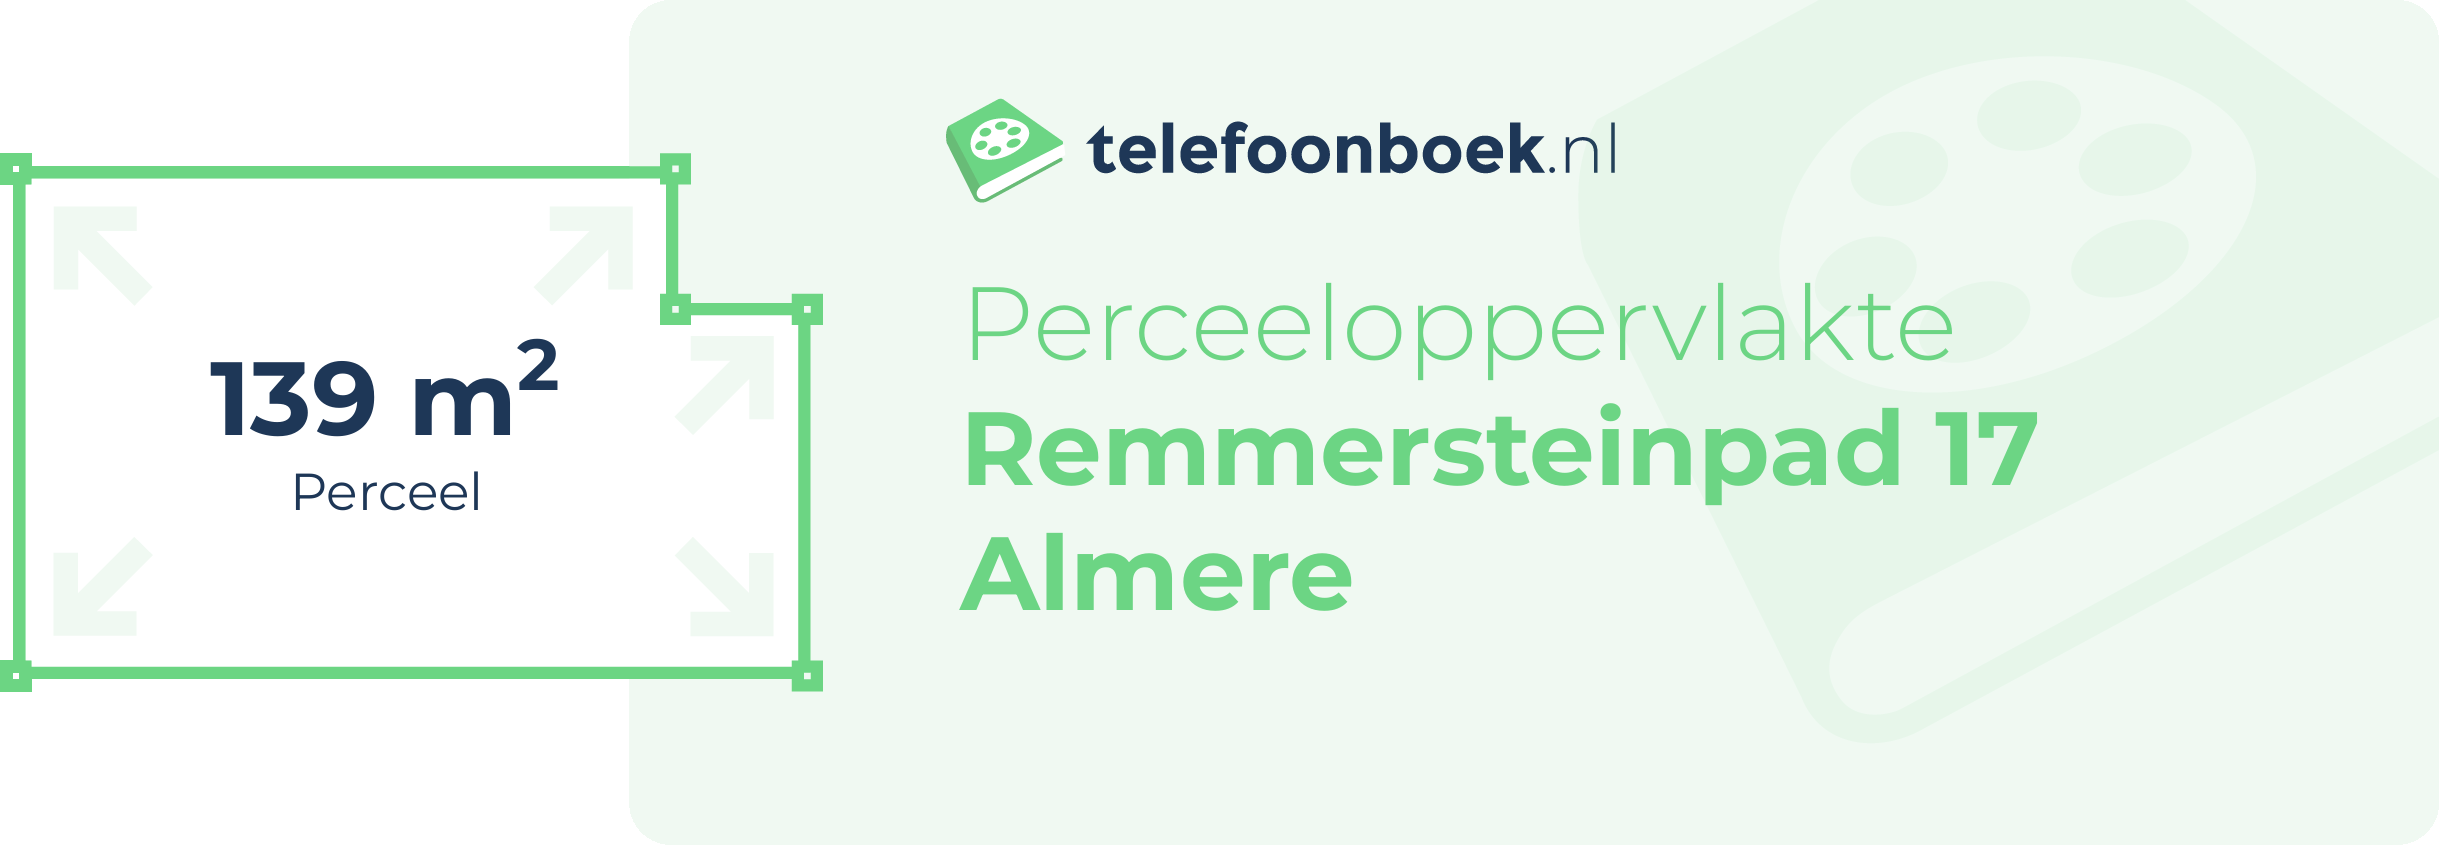 Perceeloppervlakte Remmersteinpad 17 Almere